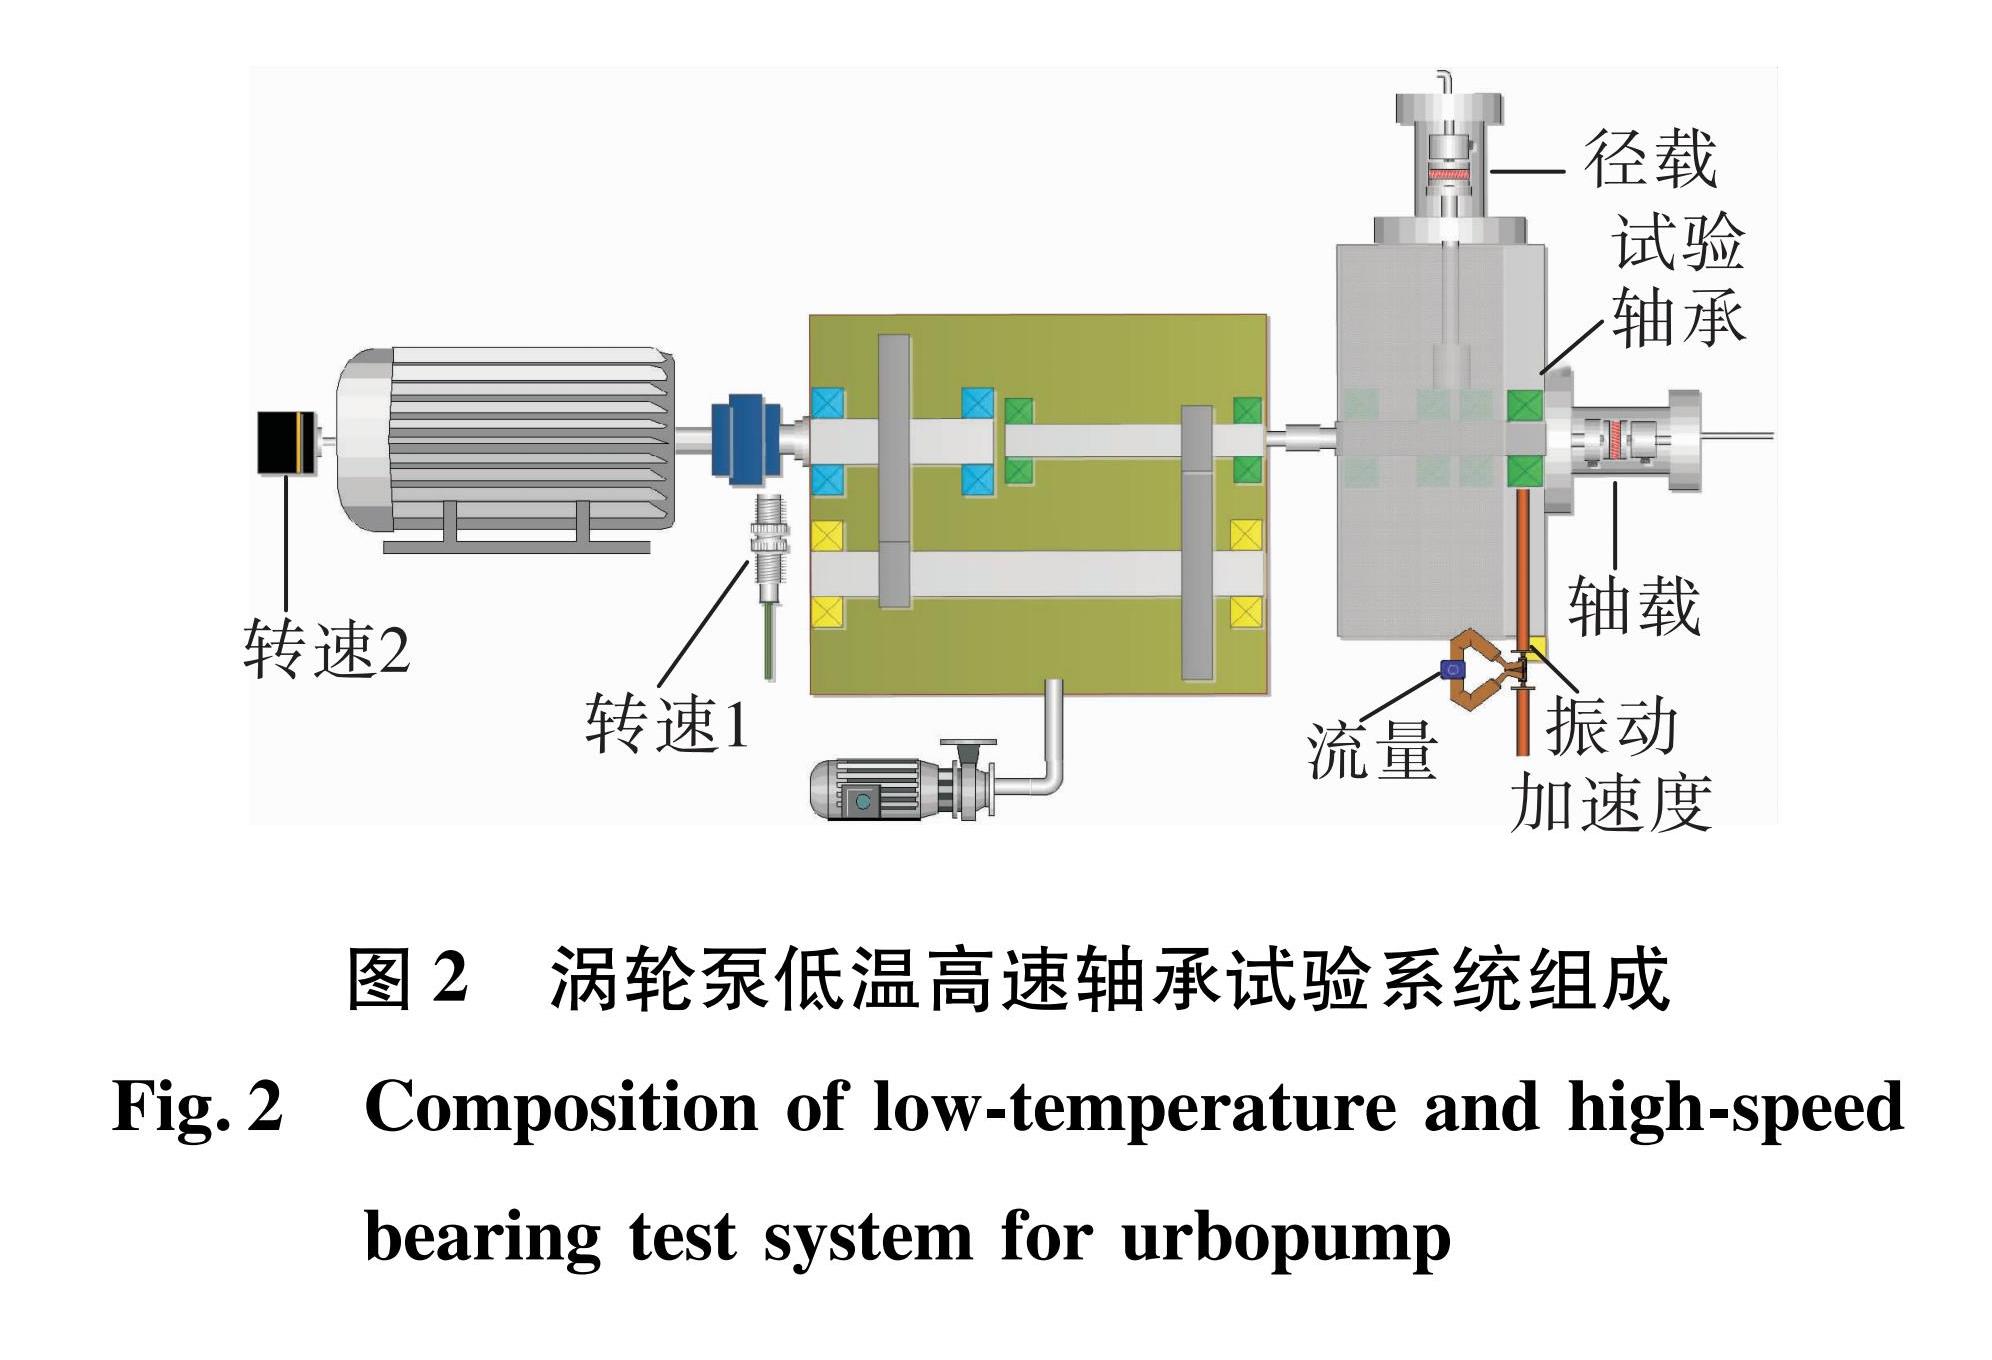 图2 涡轮泵低温高速轴承试验系统组成<br/>Fig.2 Composition of low-temperature and high-speed bearing test system for urbopump